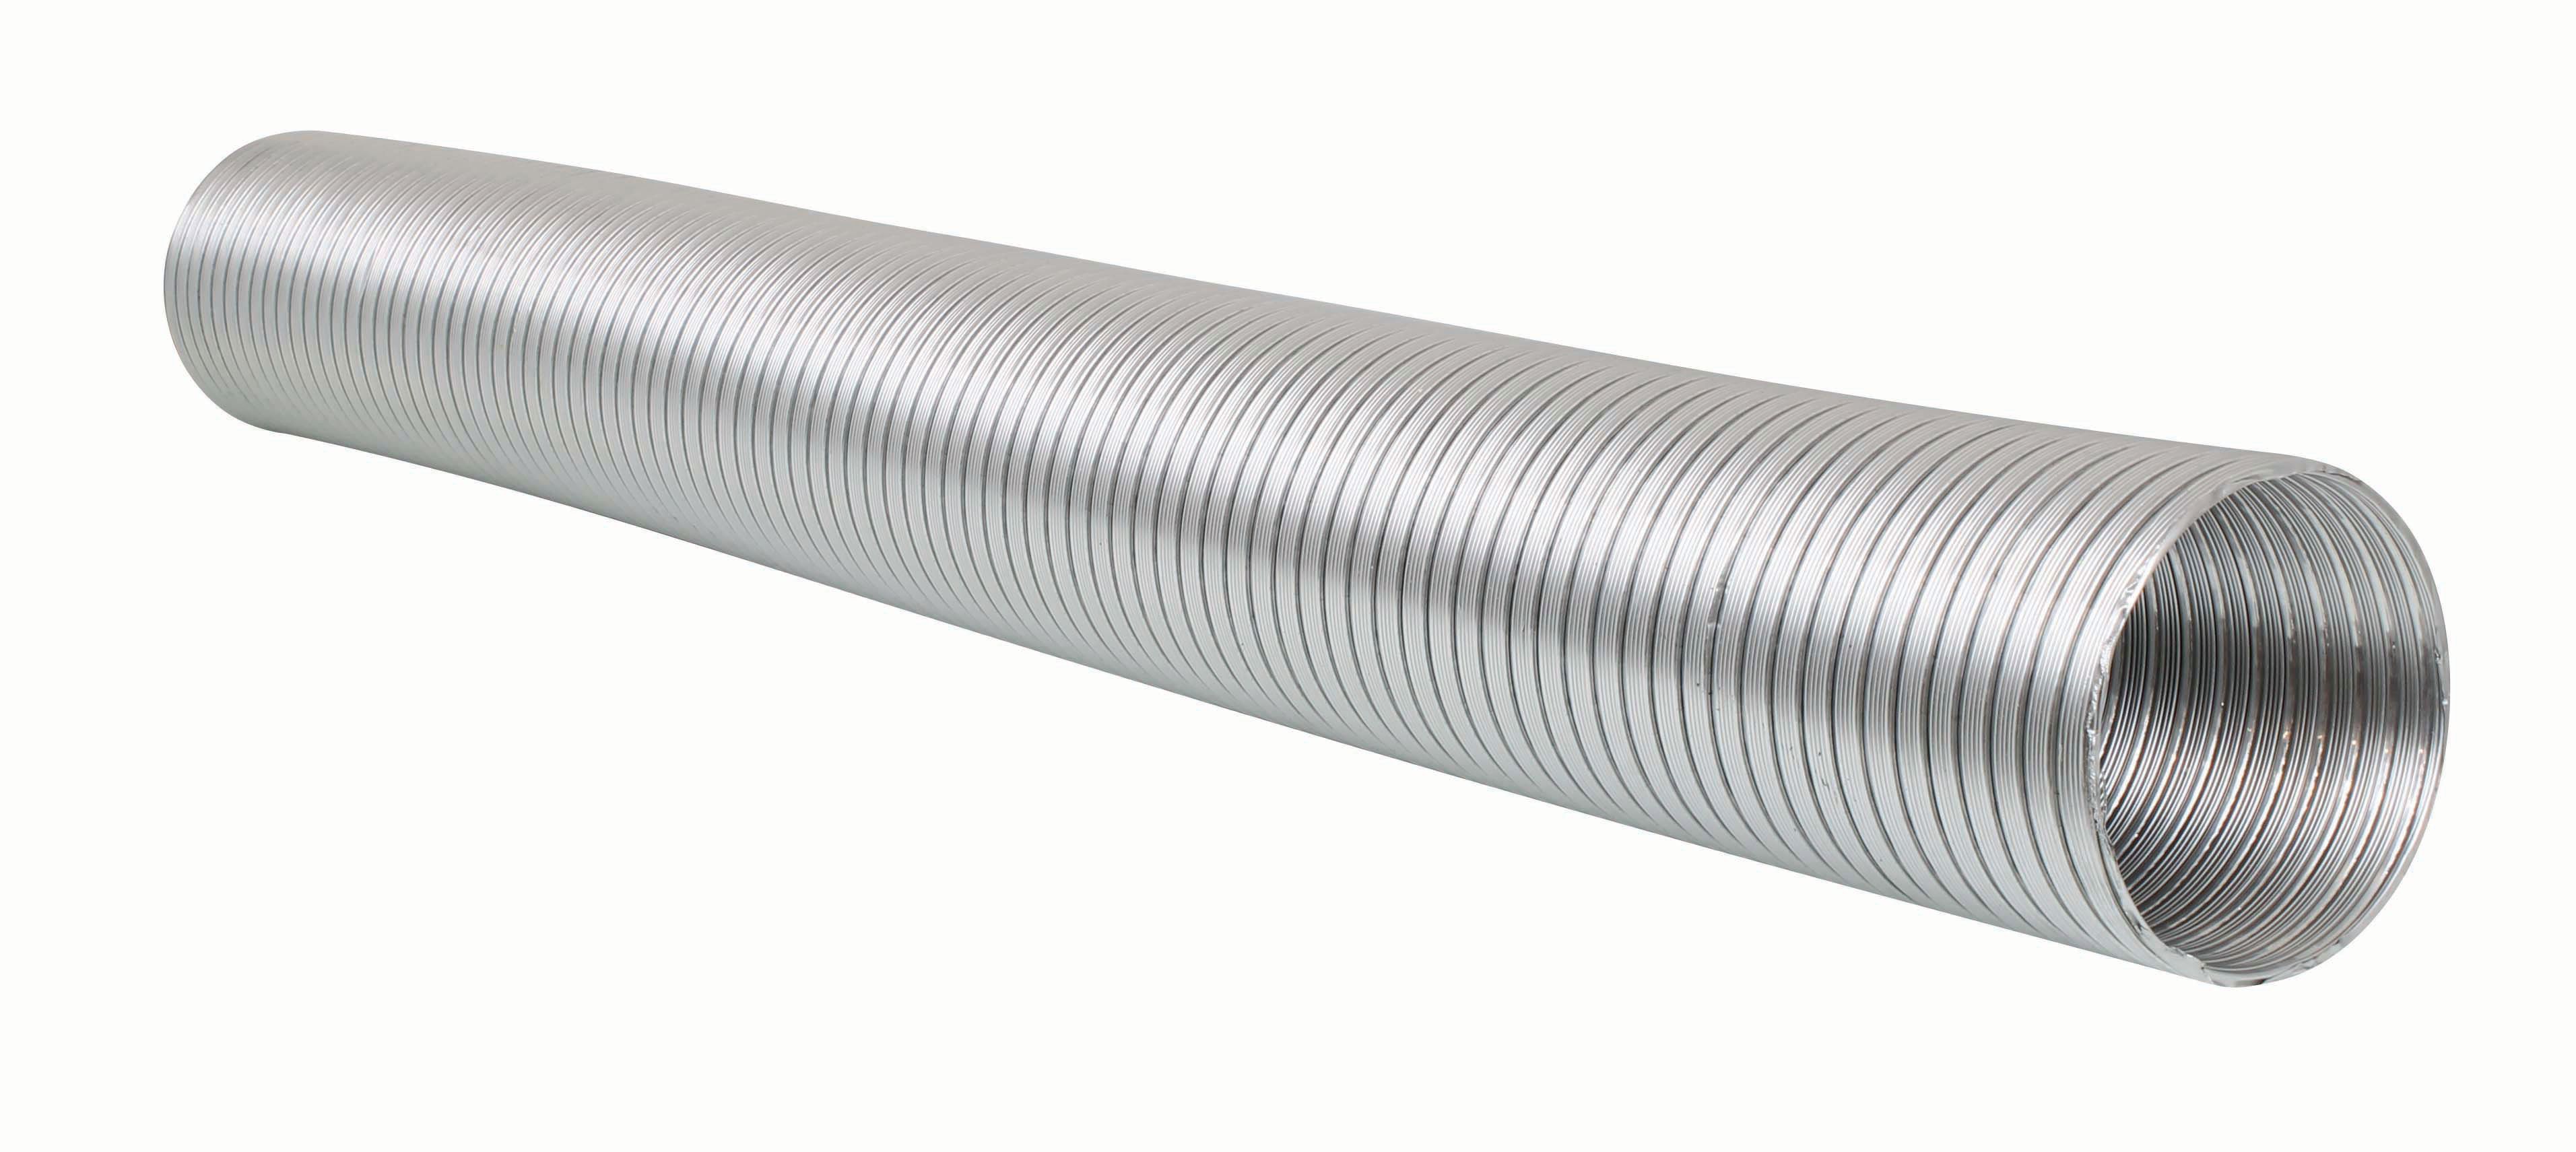 Image of Manrose Aluminium Duct - 100mm x 3m